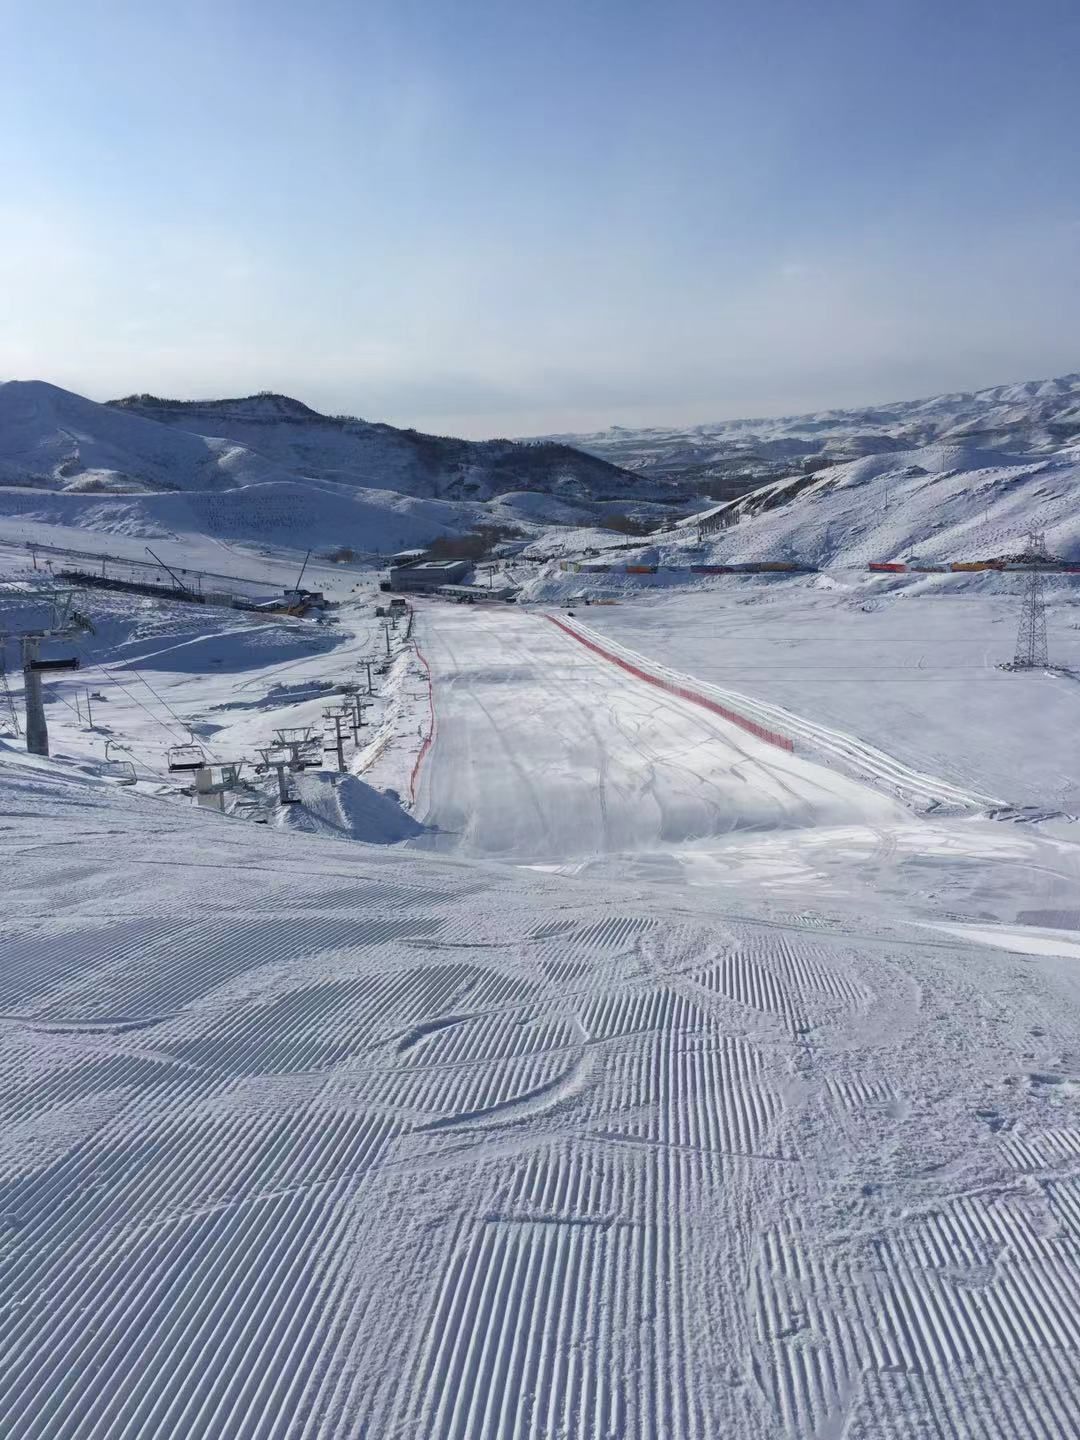 将军山滑雪场